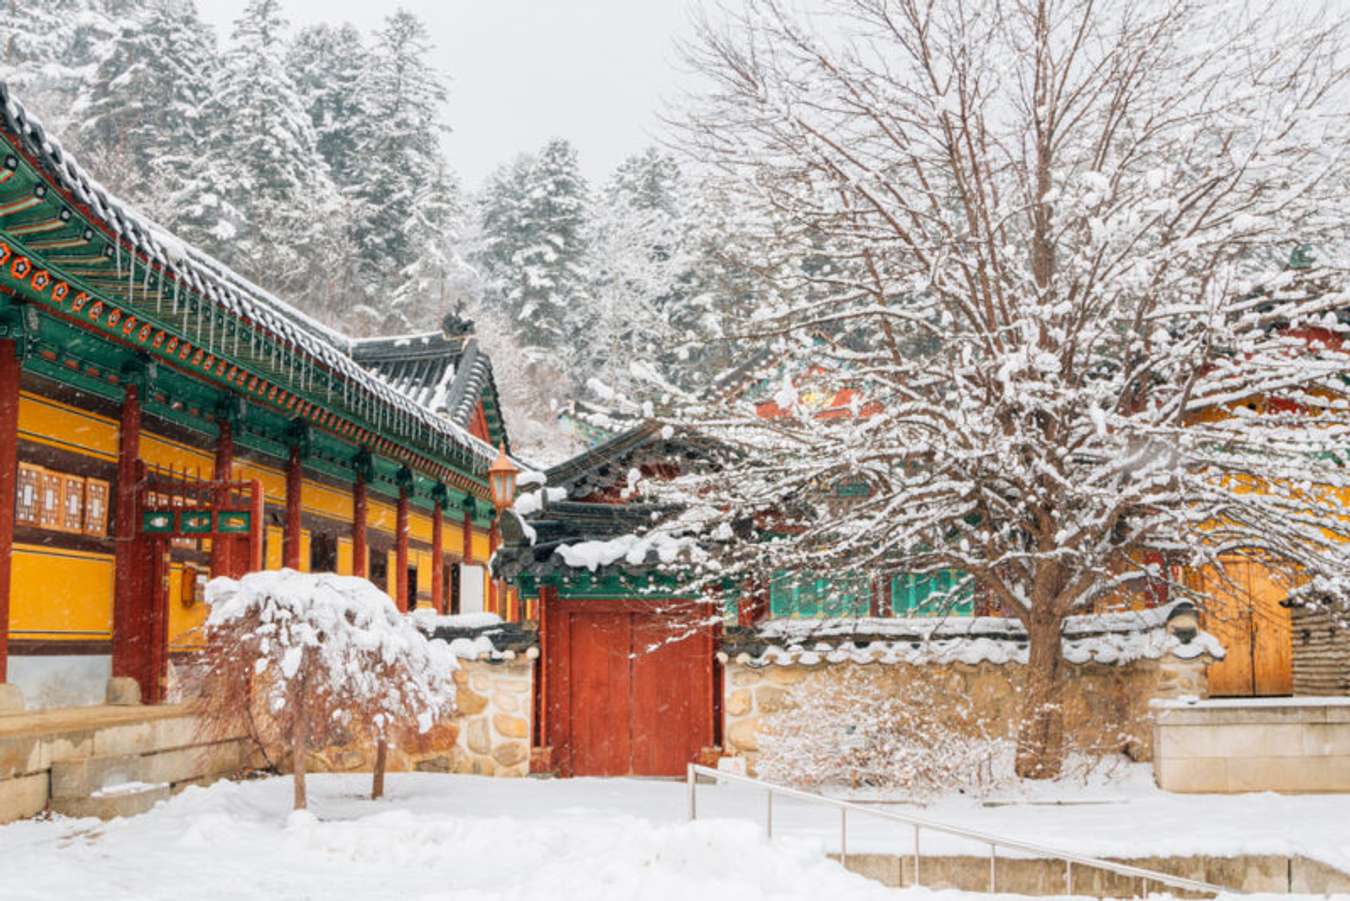 หนาวจนร้องขอชีวิต 15 ที่เที่ยวเกาหลีต้องไปก่อนหมดหิมะ